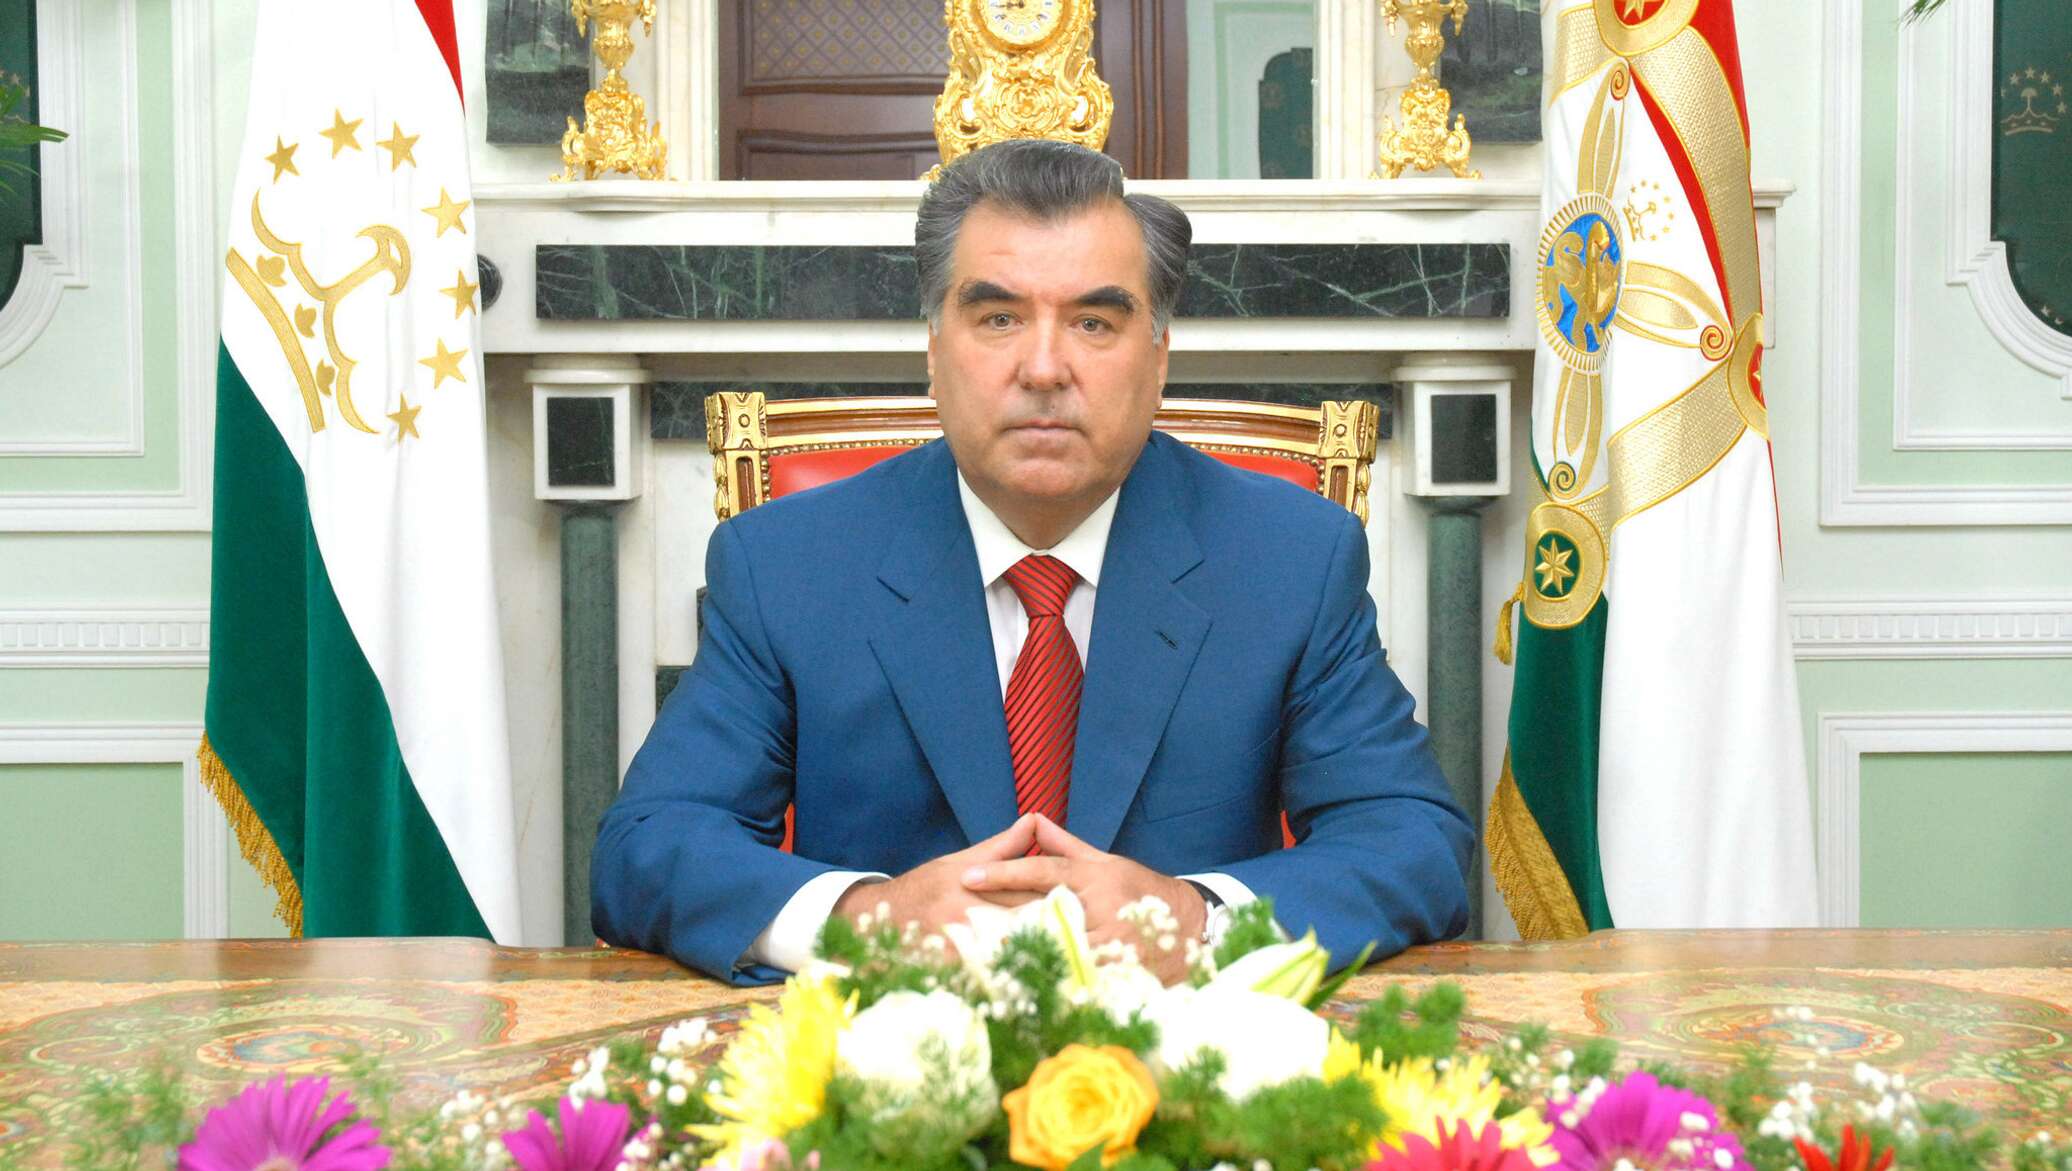 Поздравление с днем рождения на таджикском. Эмомали Рахмон. Портрет президента Таджикистана. Фото президента Таджикистана Эмомали Рахмон.